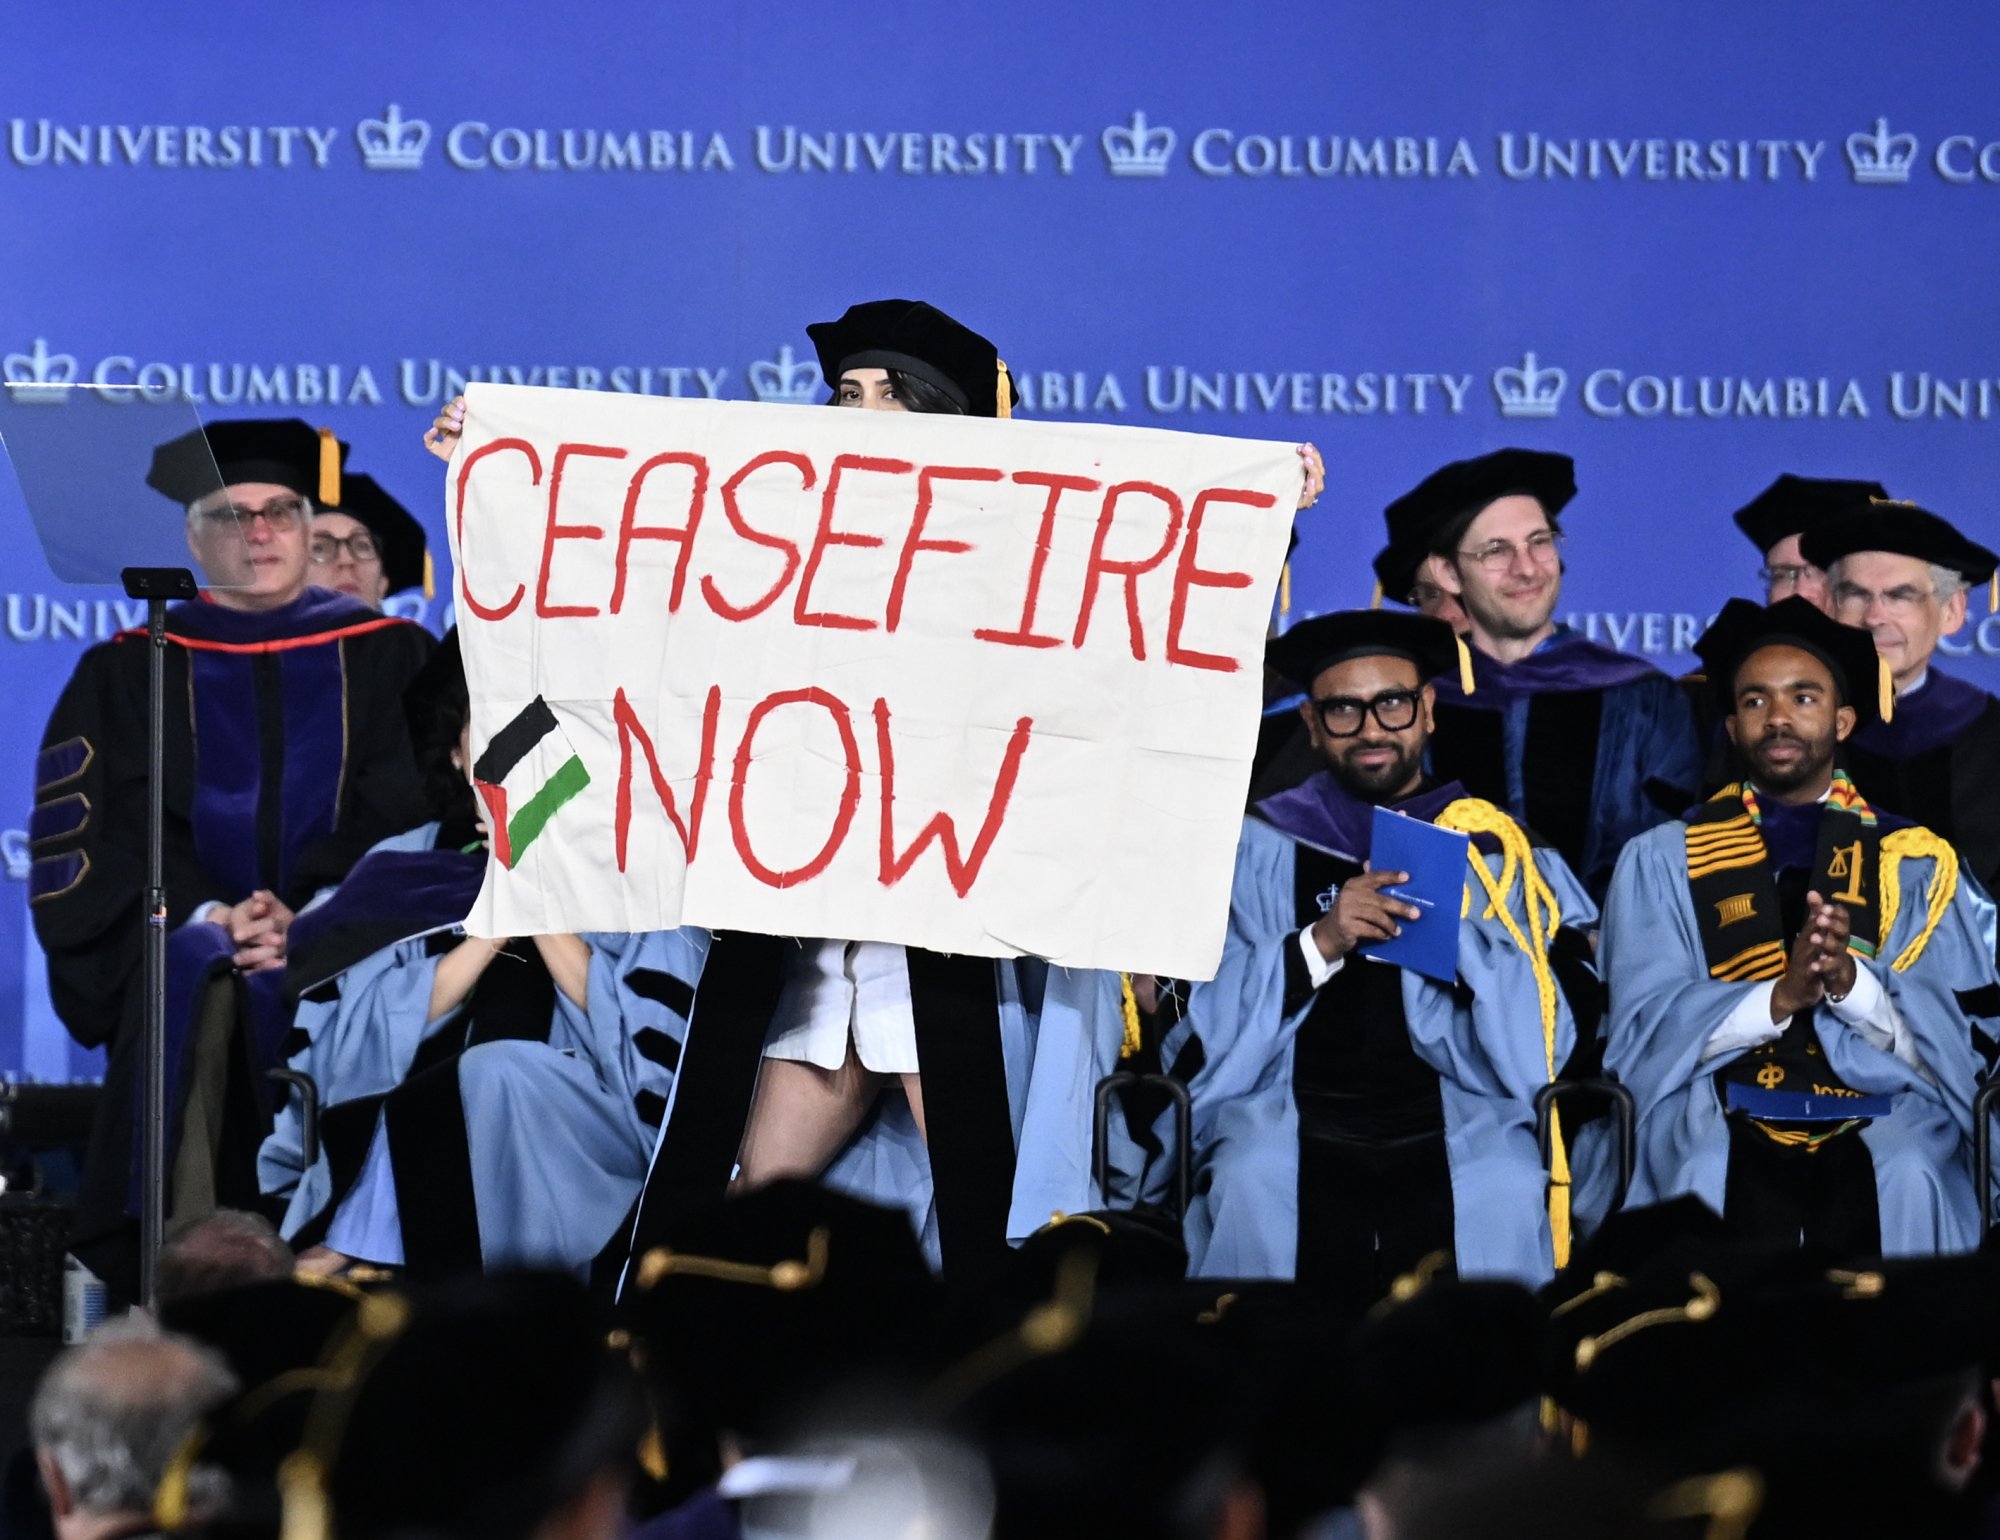 Un diplômé de l'Université de Columbia brandit une banderole « Ceasefire Now » sur la scène lors de la remise de ses diplômes.